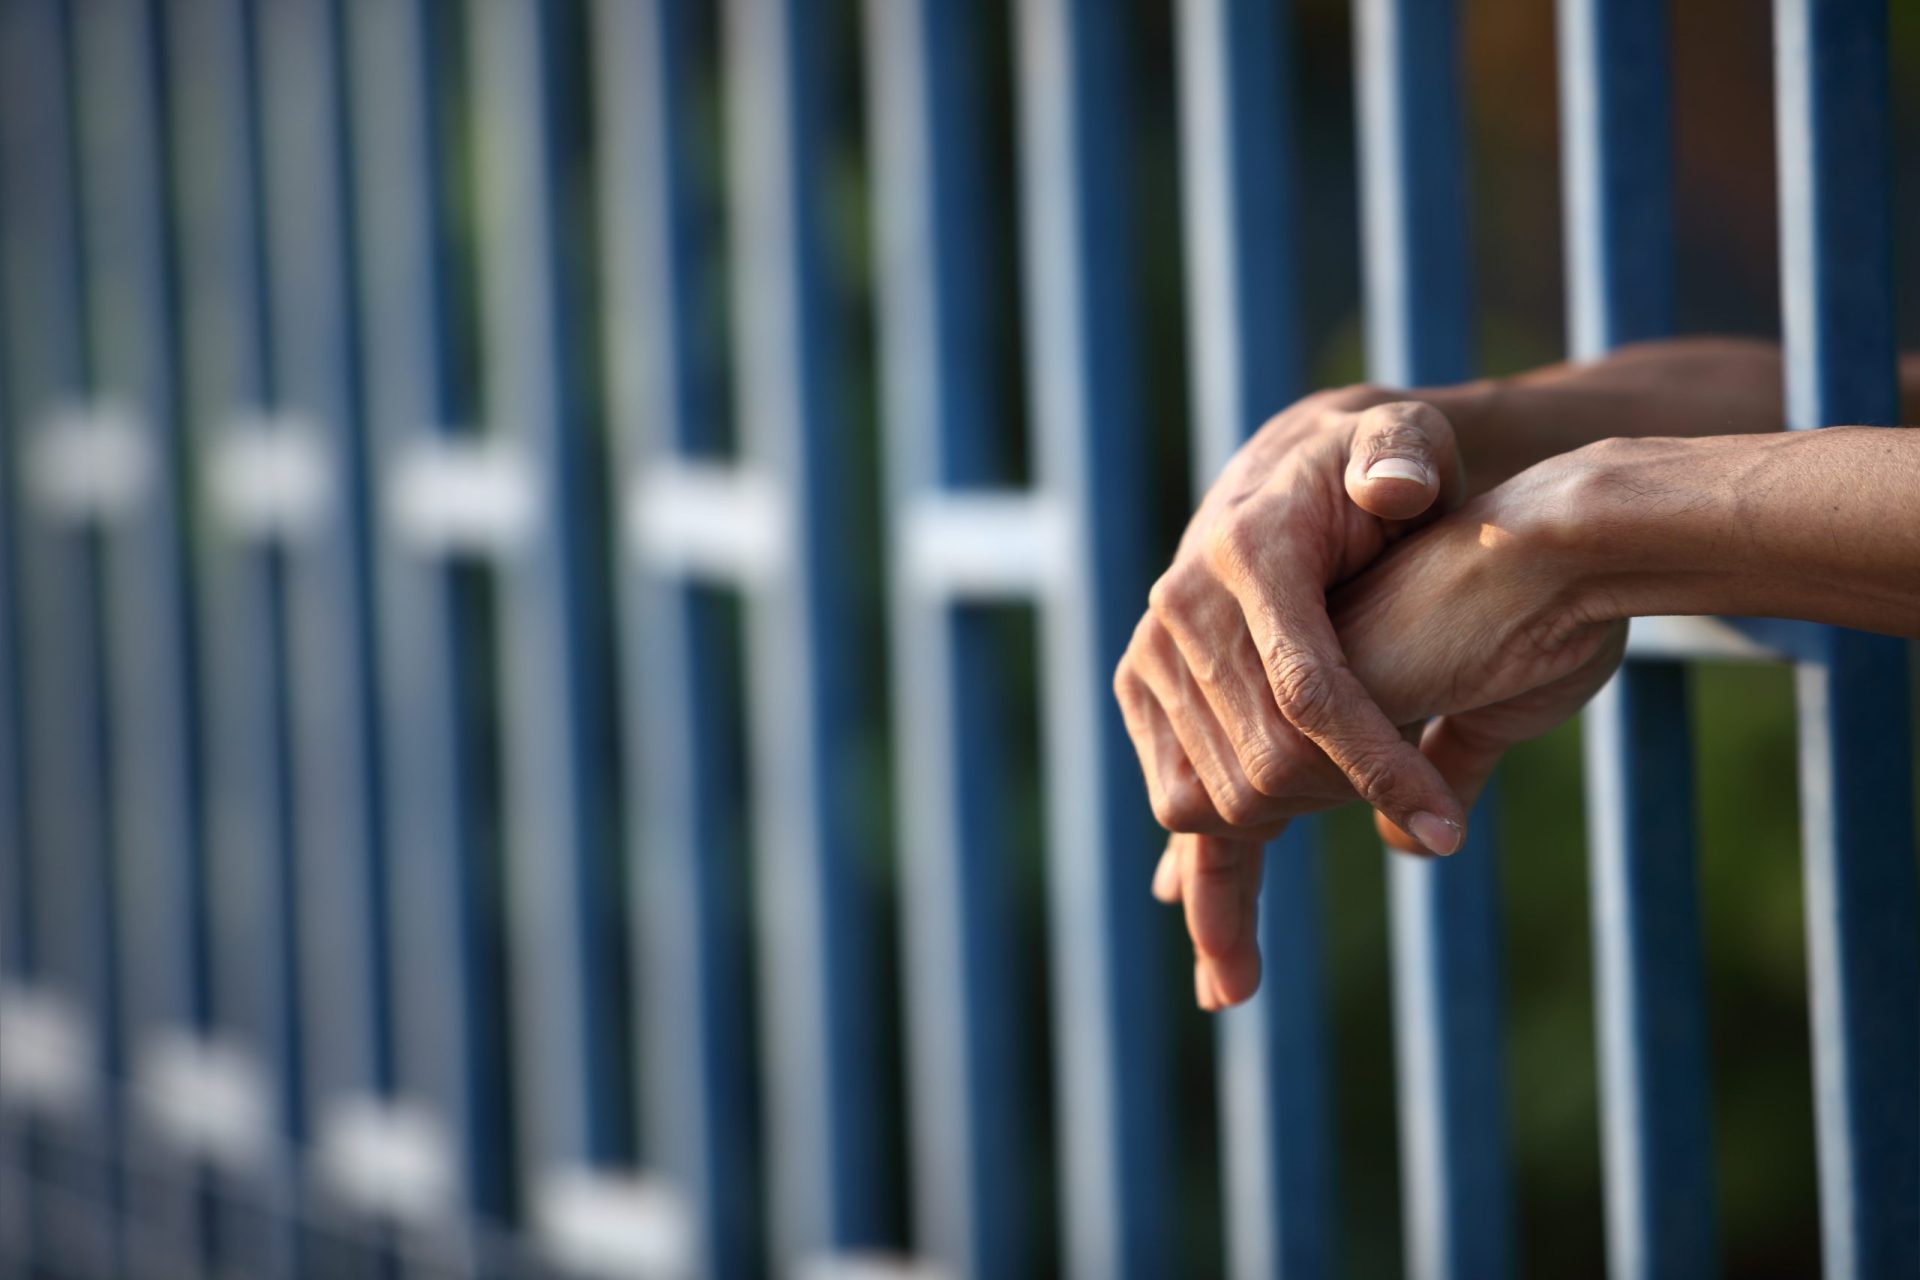 Cadeias portuguesas têm reclusos a mais